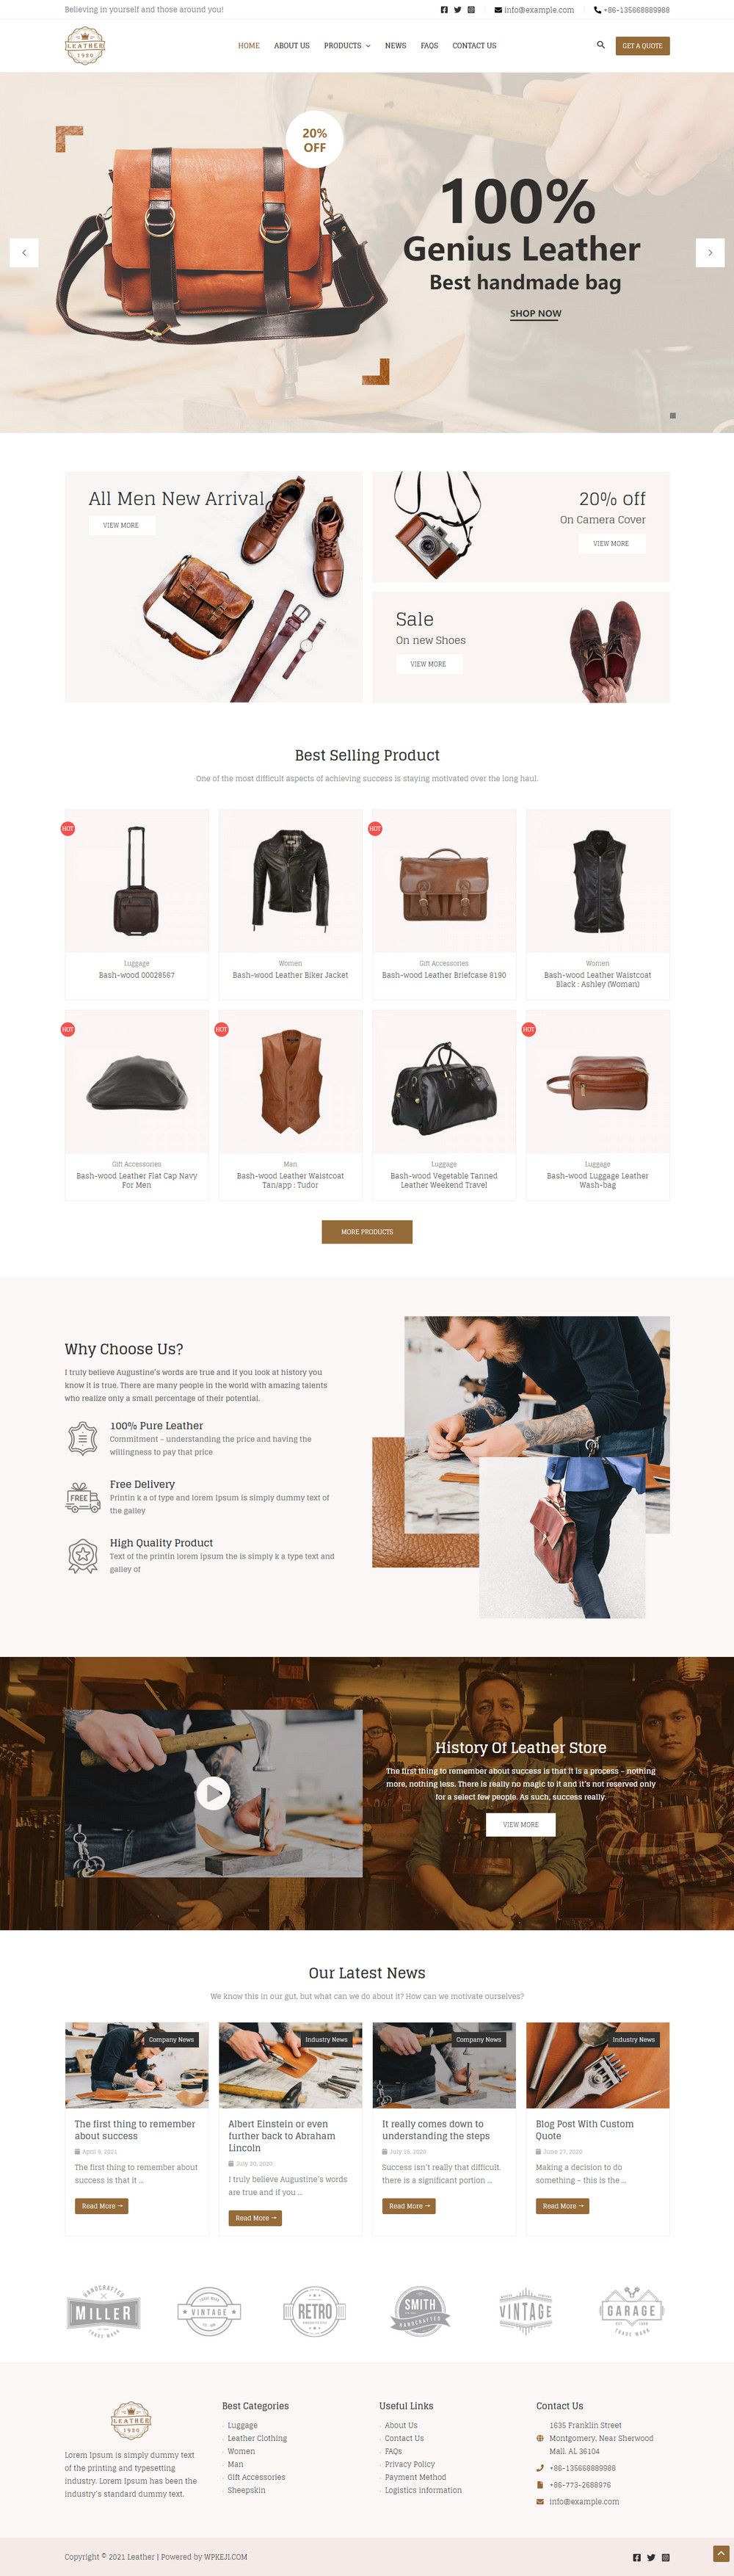 皮革制品营销成品成品网站模板